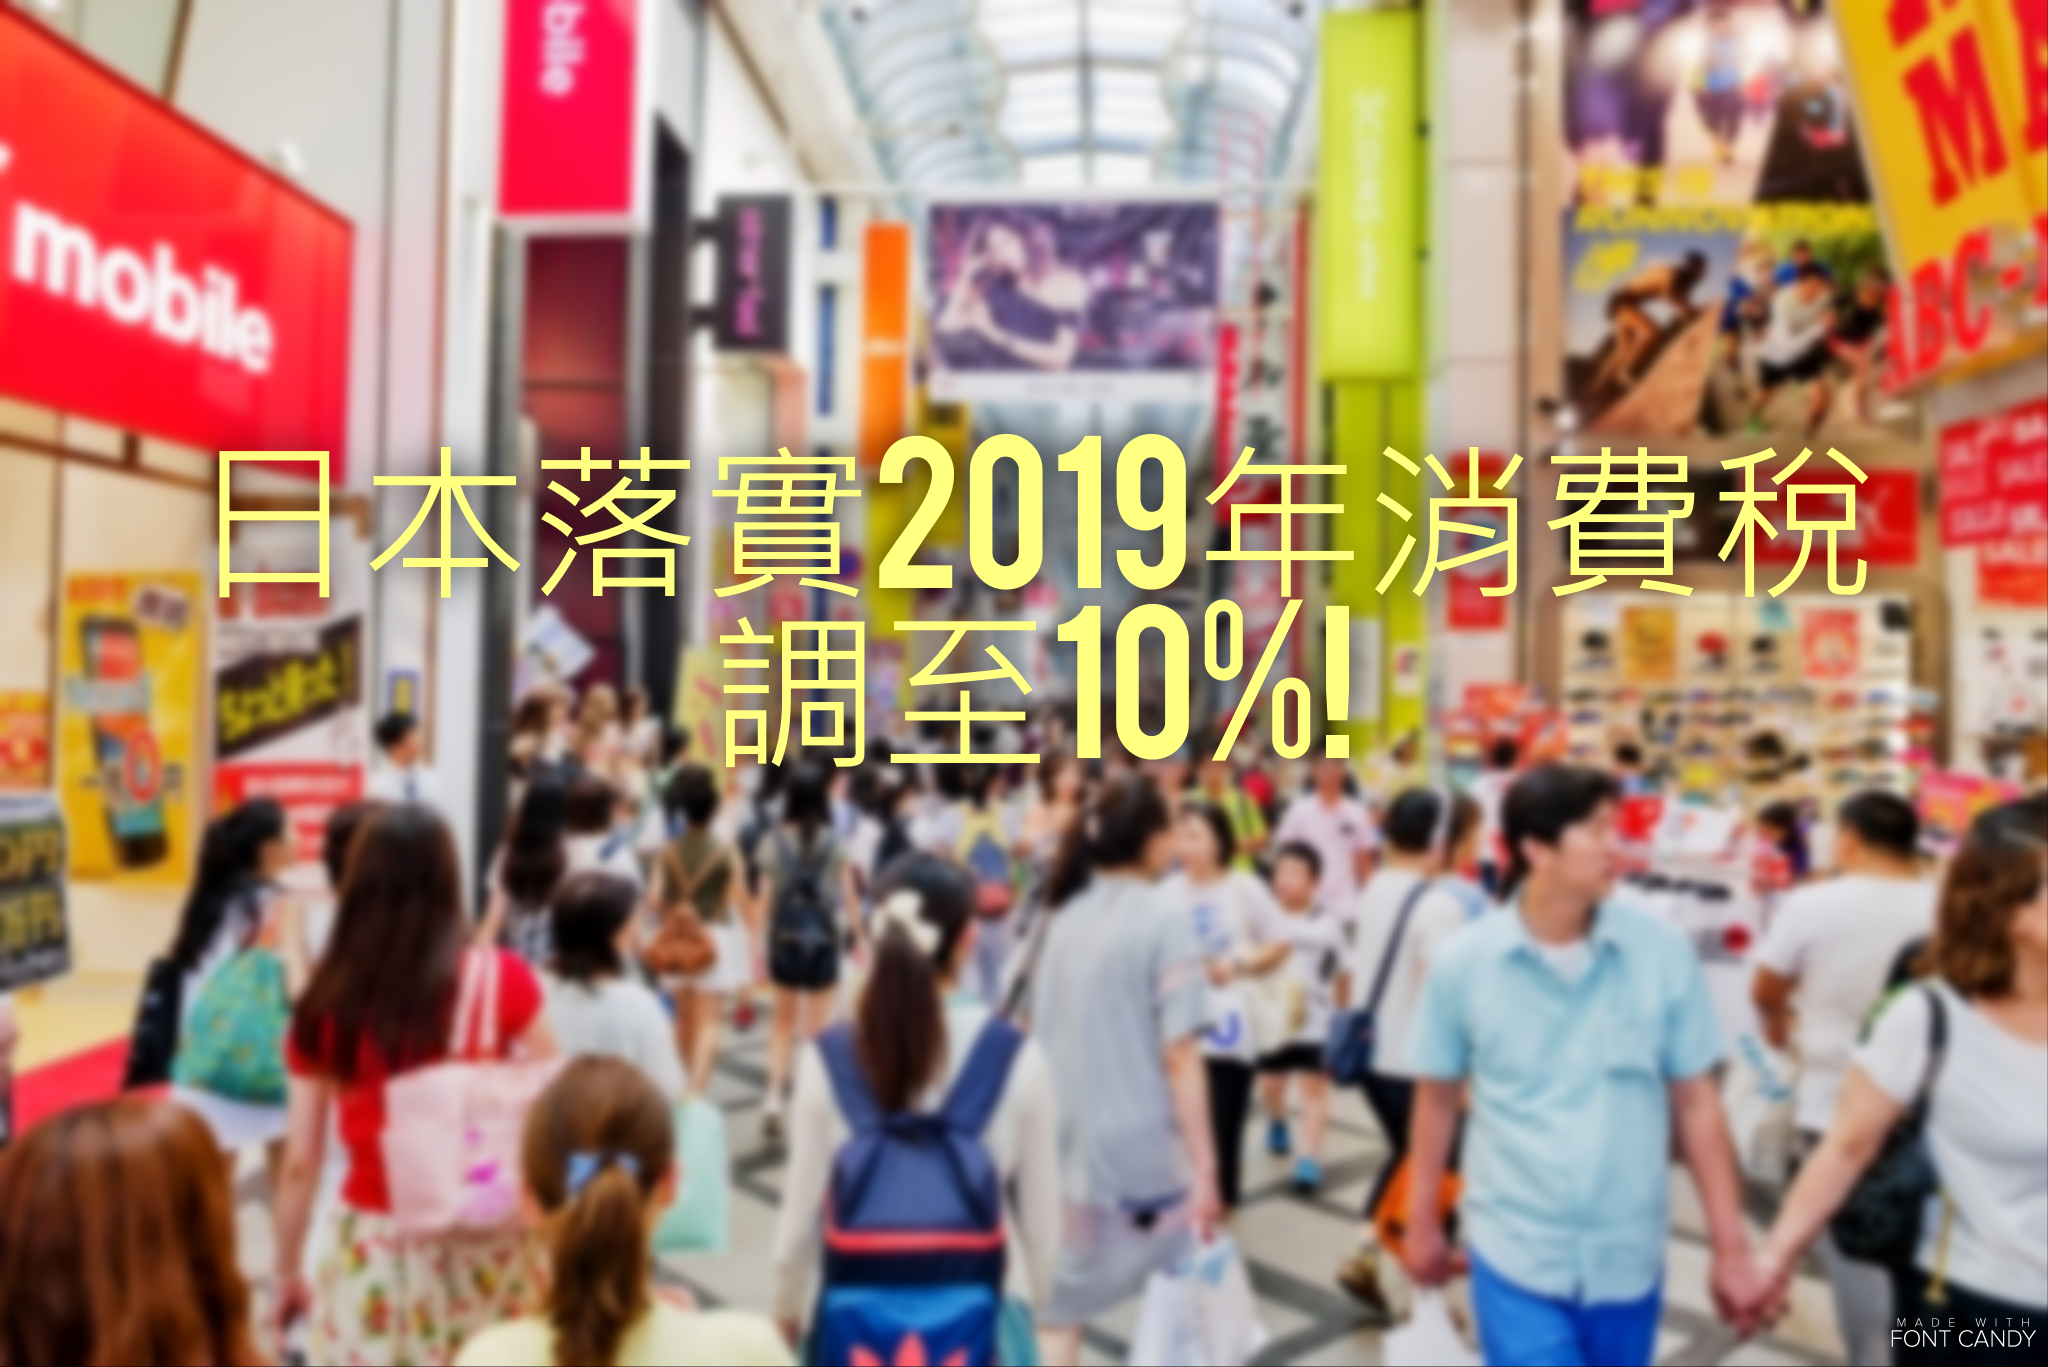 日本2019年消費稅由8%增至10% 遊日趁早了!